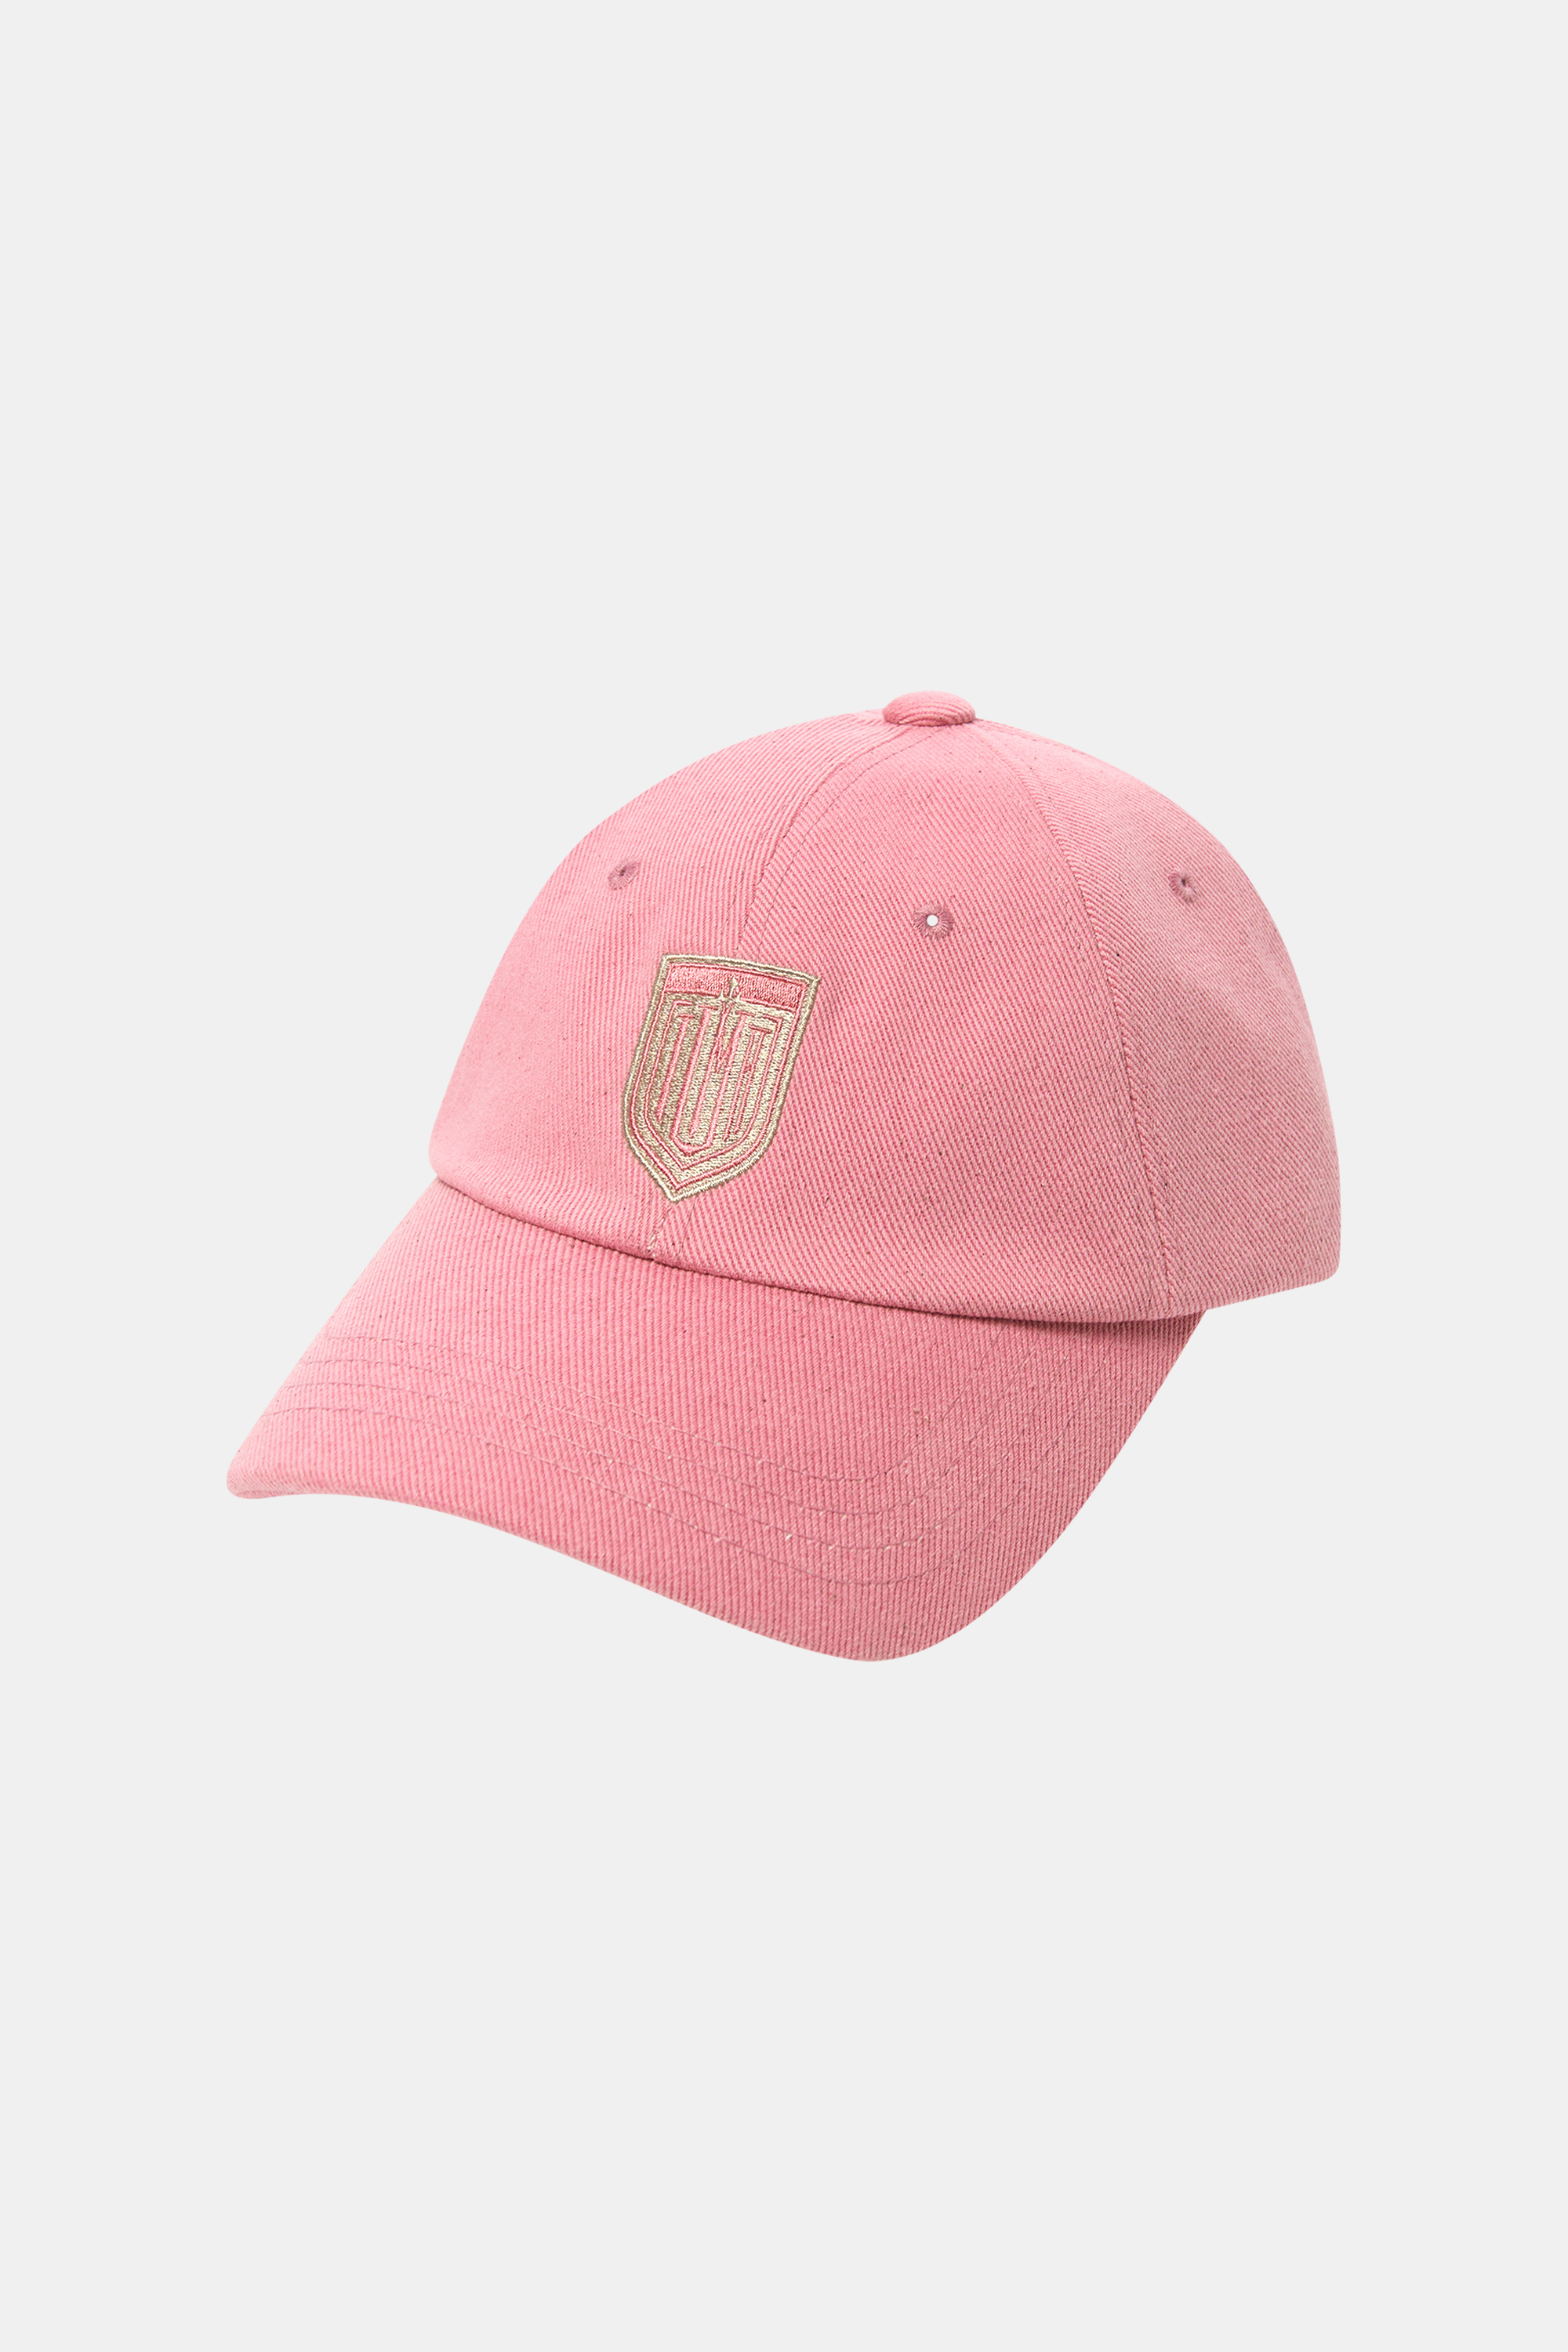 EMBLEM VINTAGE BALL CAP pink